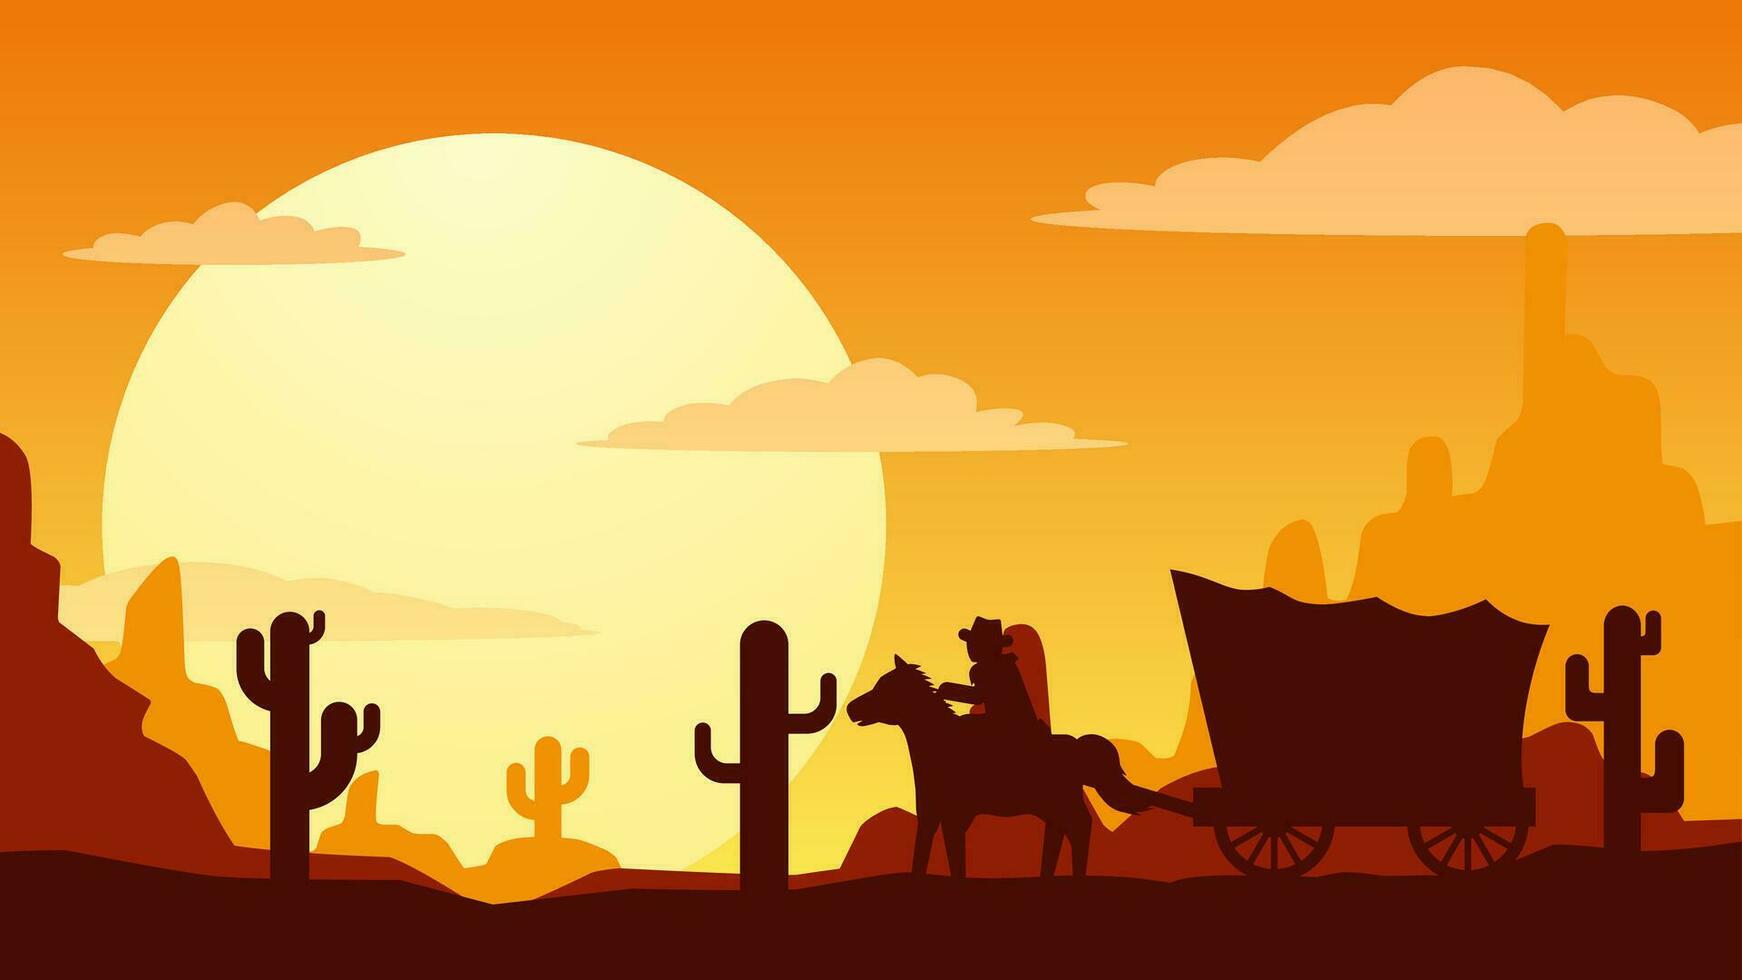 zonsondergang in de wild west woestijn landschap vector illustratie. cowboy met wagon in de wild west woestijn landschap. Amerikaans woestijn landschap voor achtergrond, behang of landen bladzijde